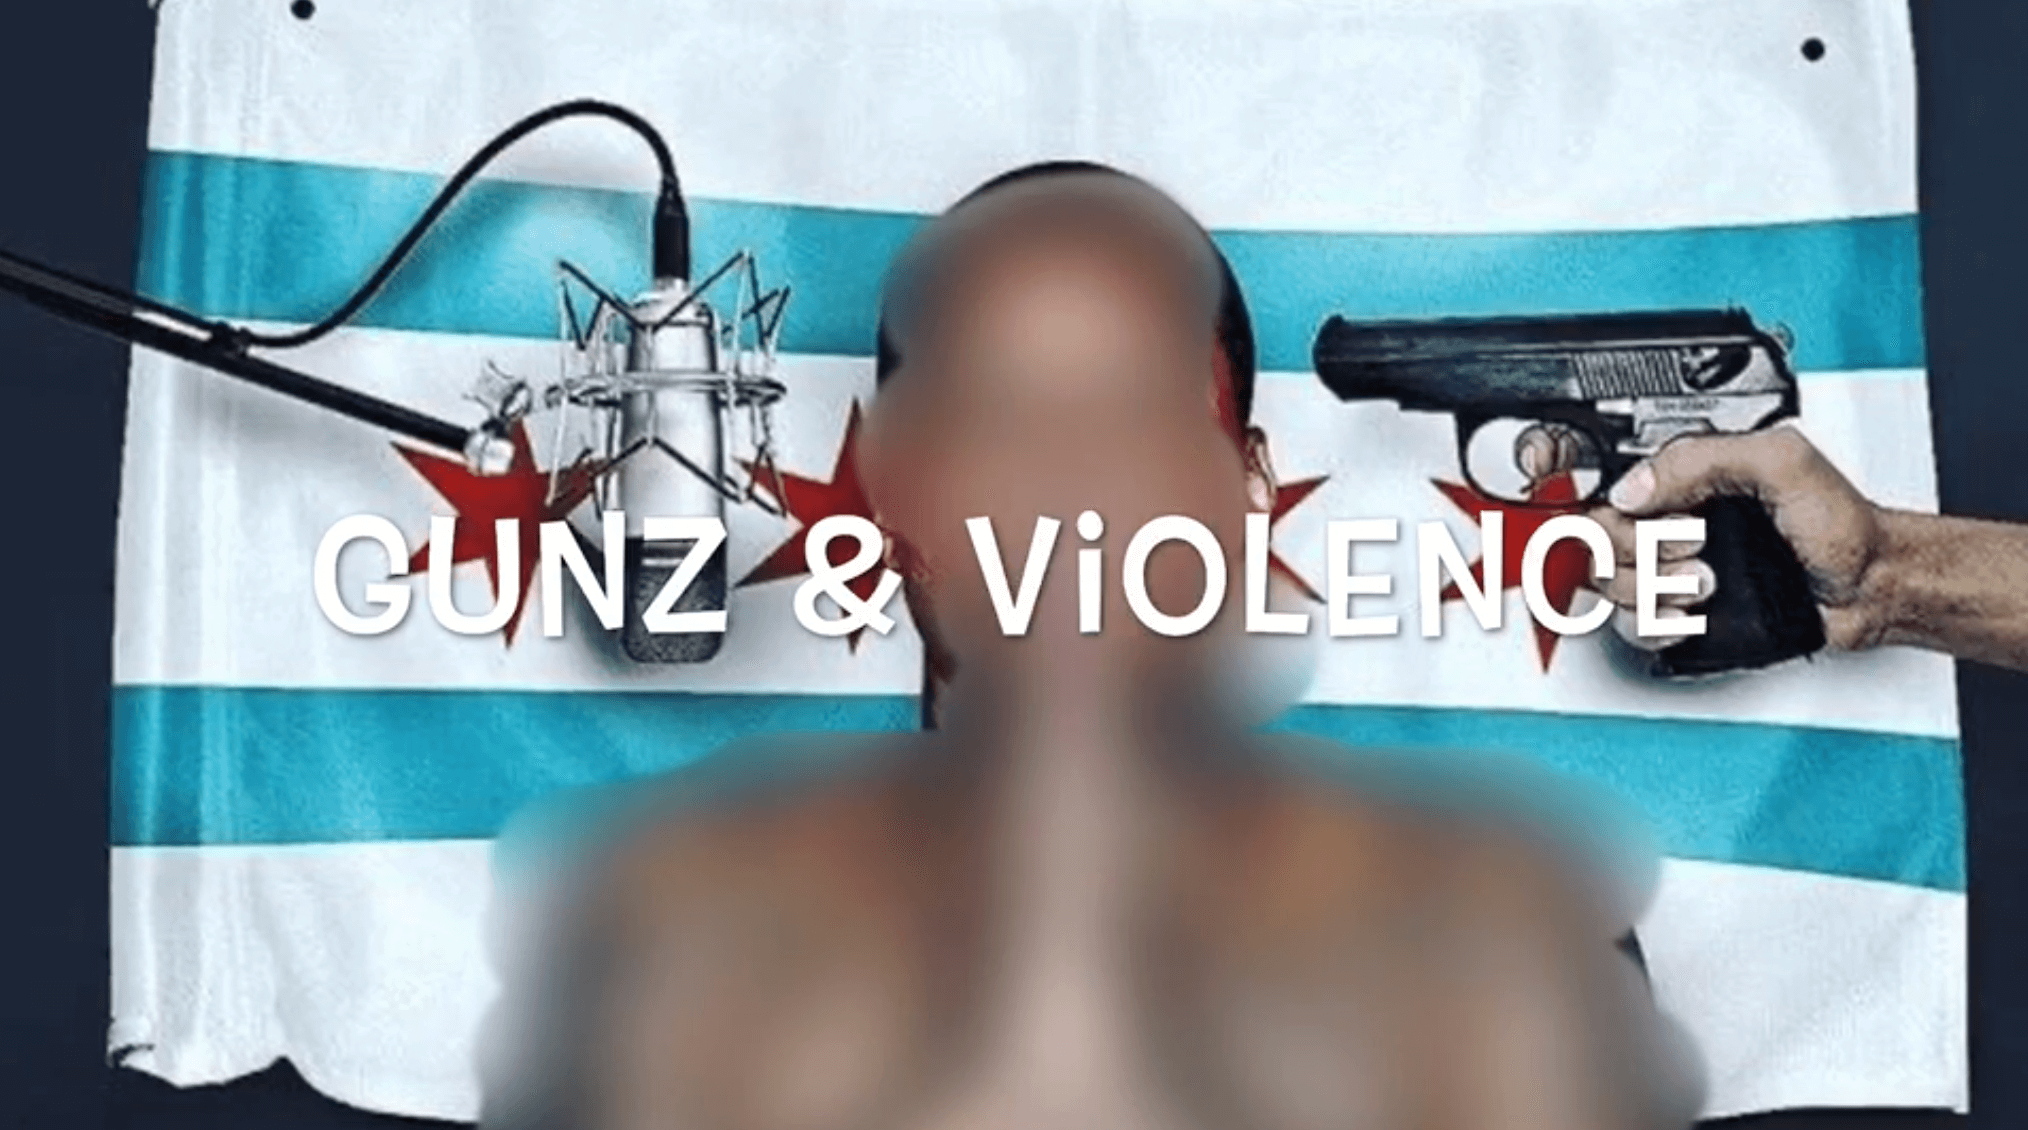 Gunz Violence 02